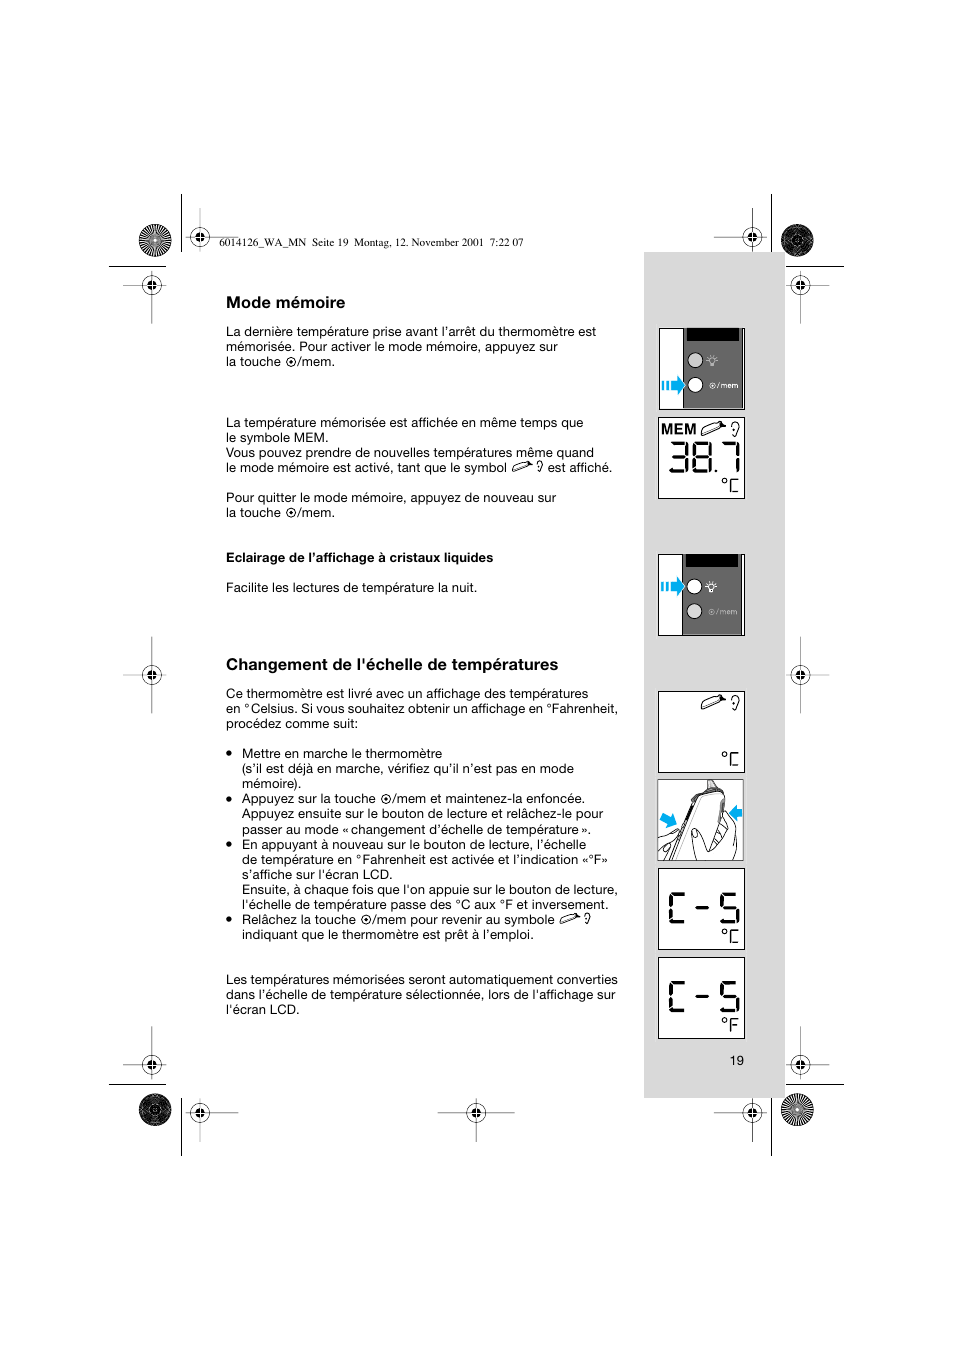 Mode mémoire, Changement de l'échelle de températures | Braun ThermoScan  Pro3000 User Manual | Page 19 / 63